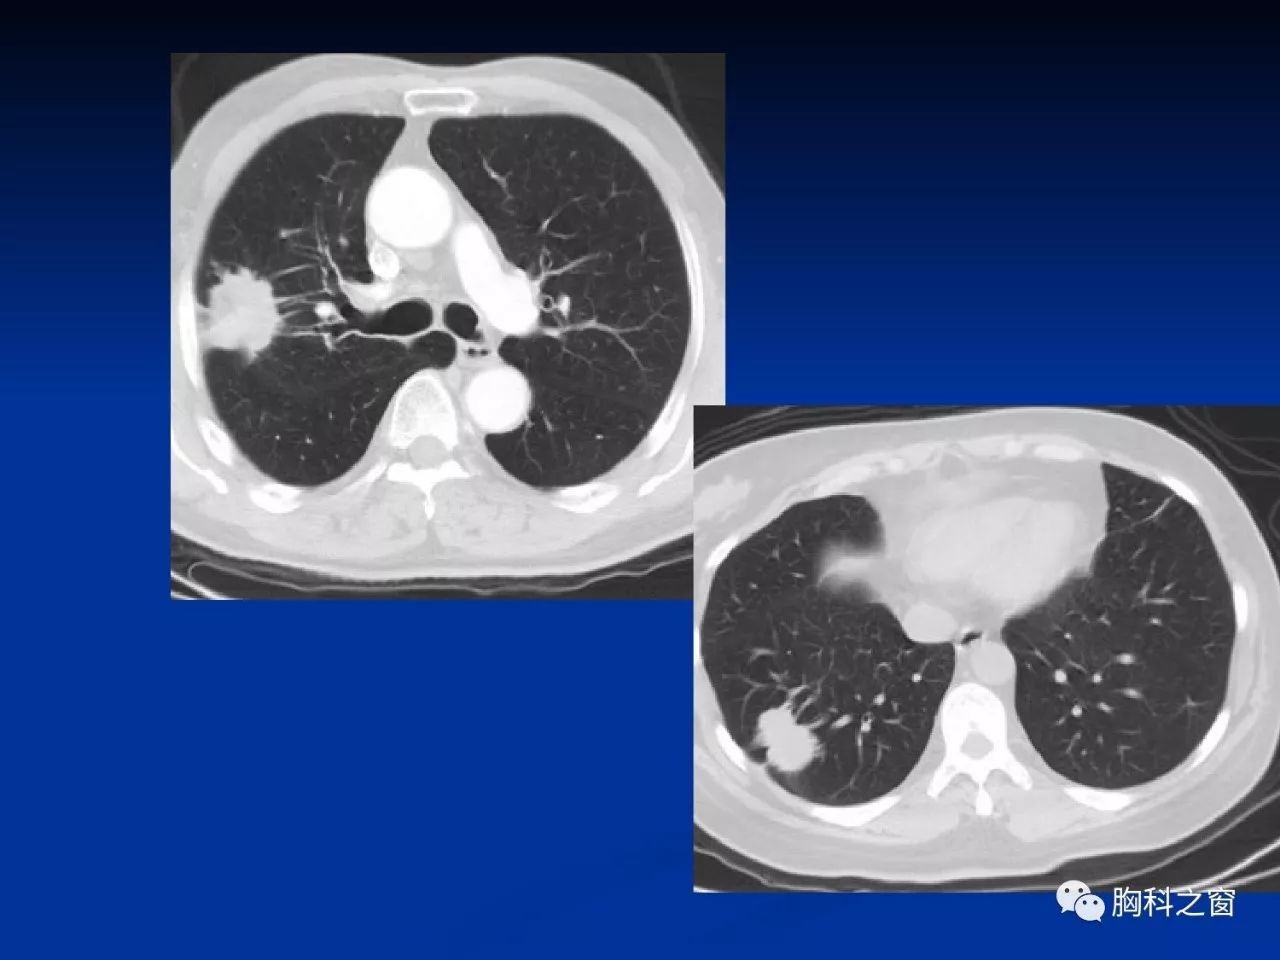 周新华:肺结核与肺癌的影像特点与鉴别